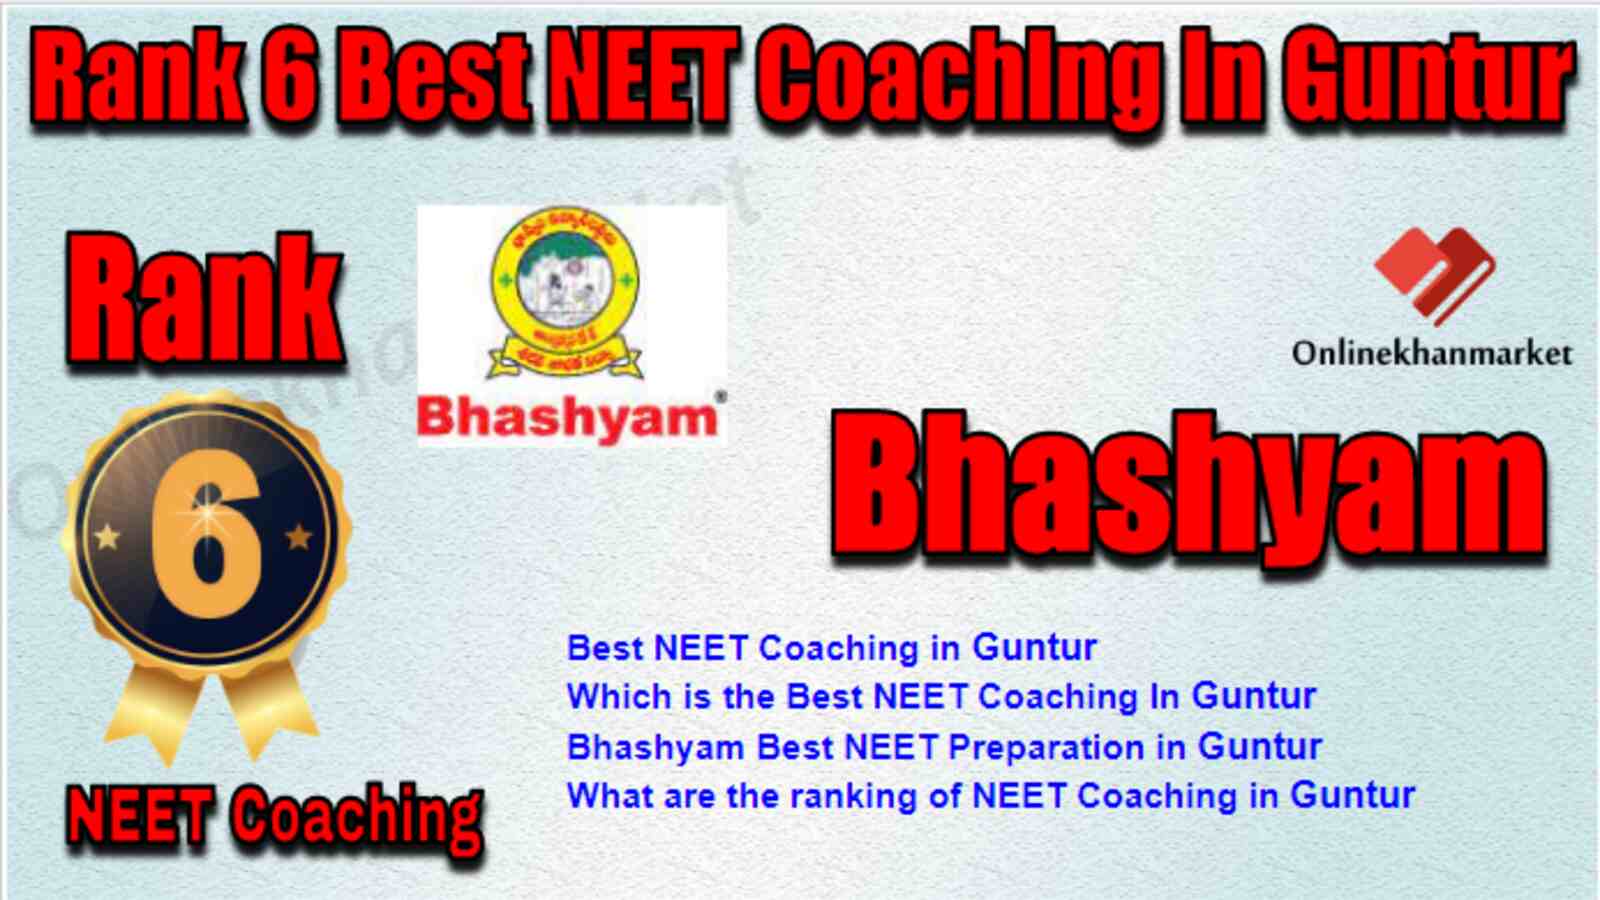 Rank 6 Best NEET Coaching in Guntur